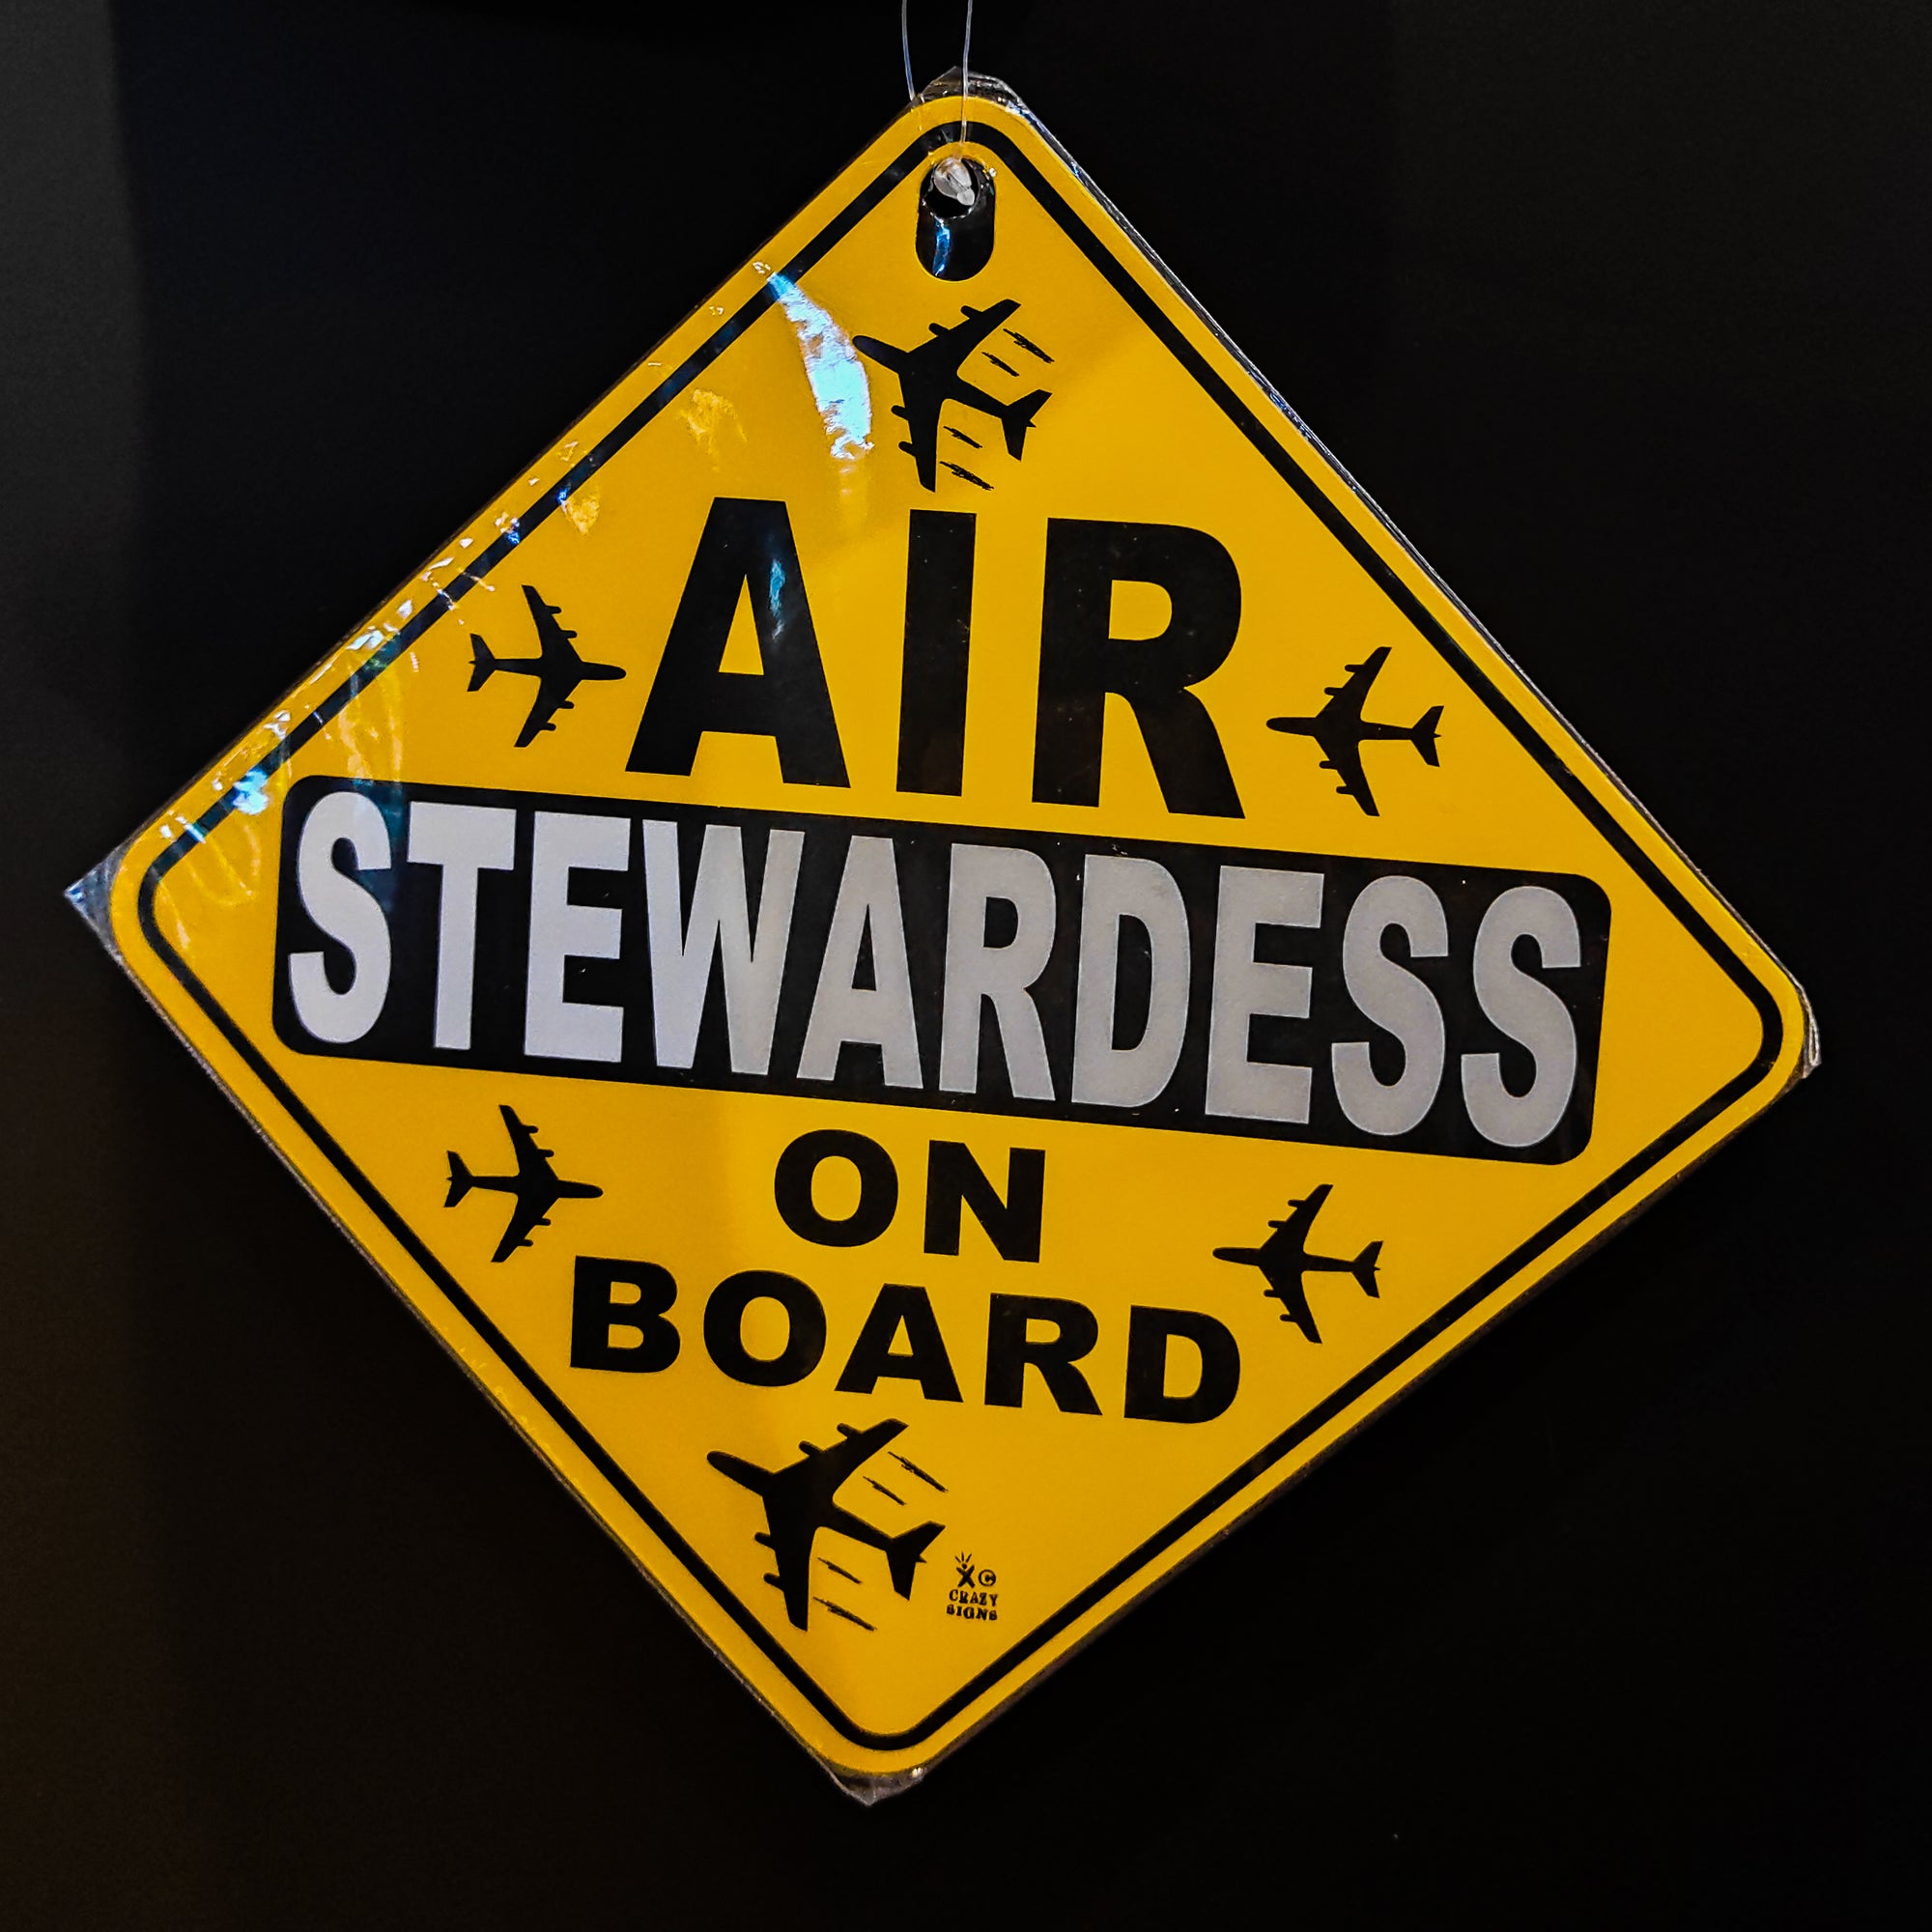 Car Tag (Cabin & Stewardess, etc )